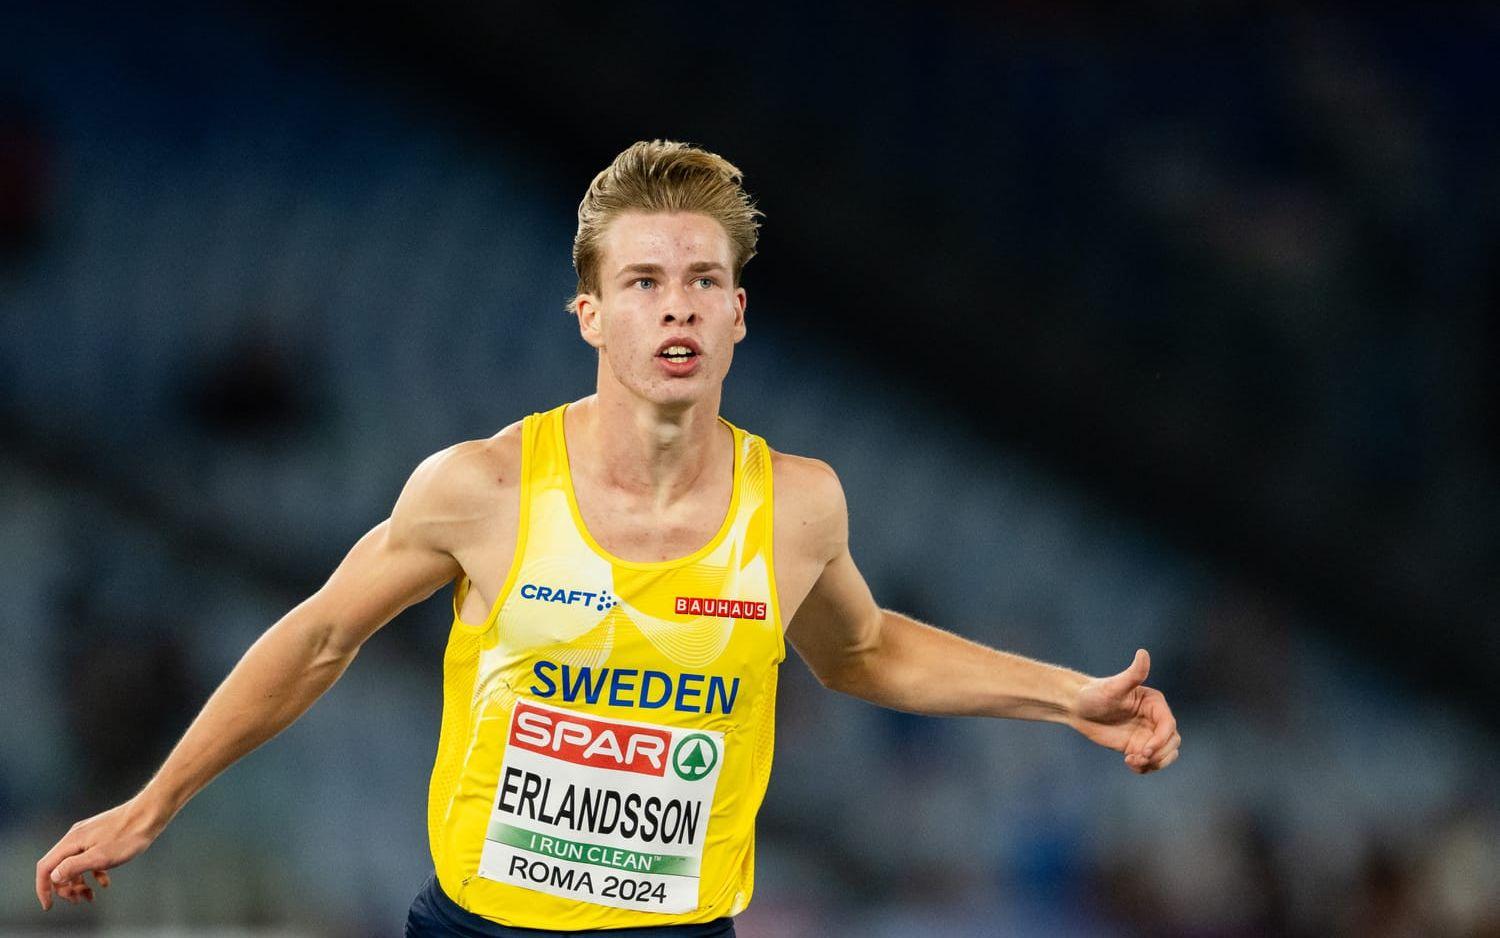 Erik Erlandsson skrällde och tog sig till final på 200 meter. 